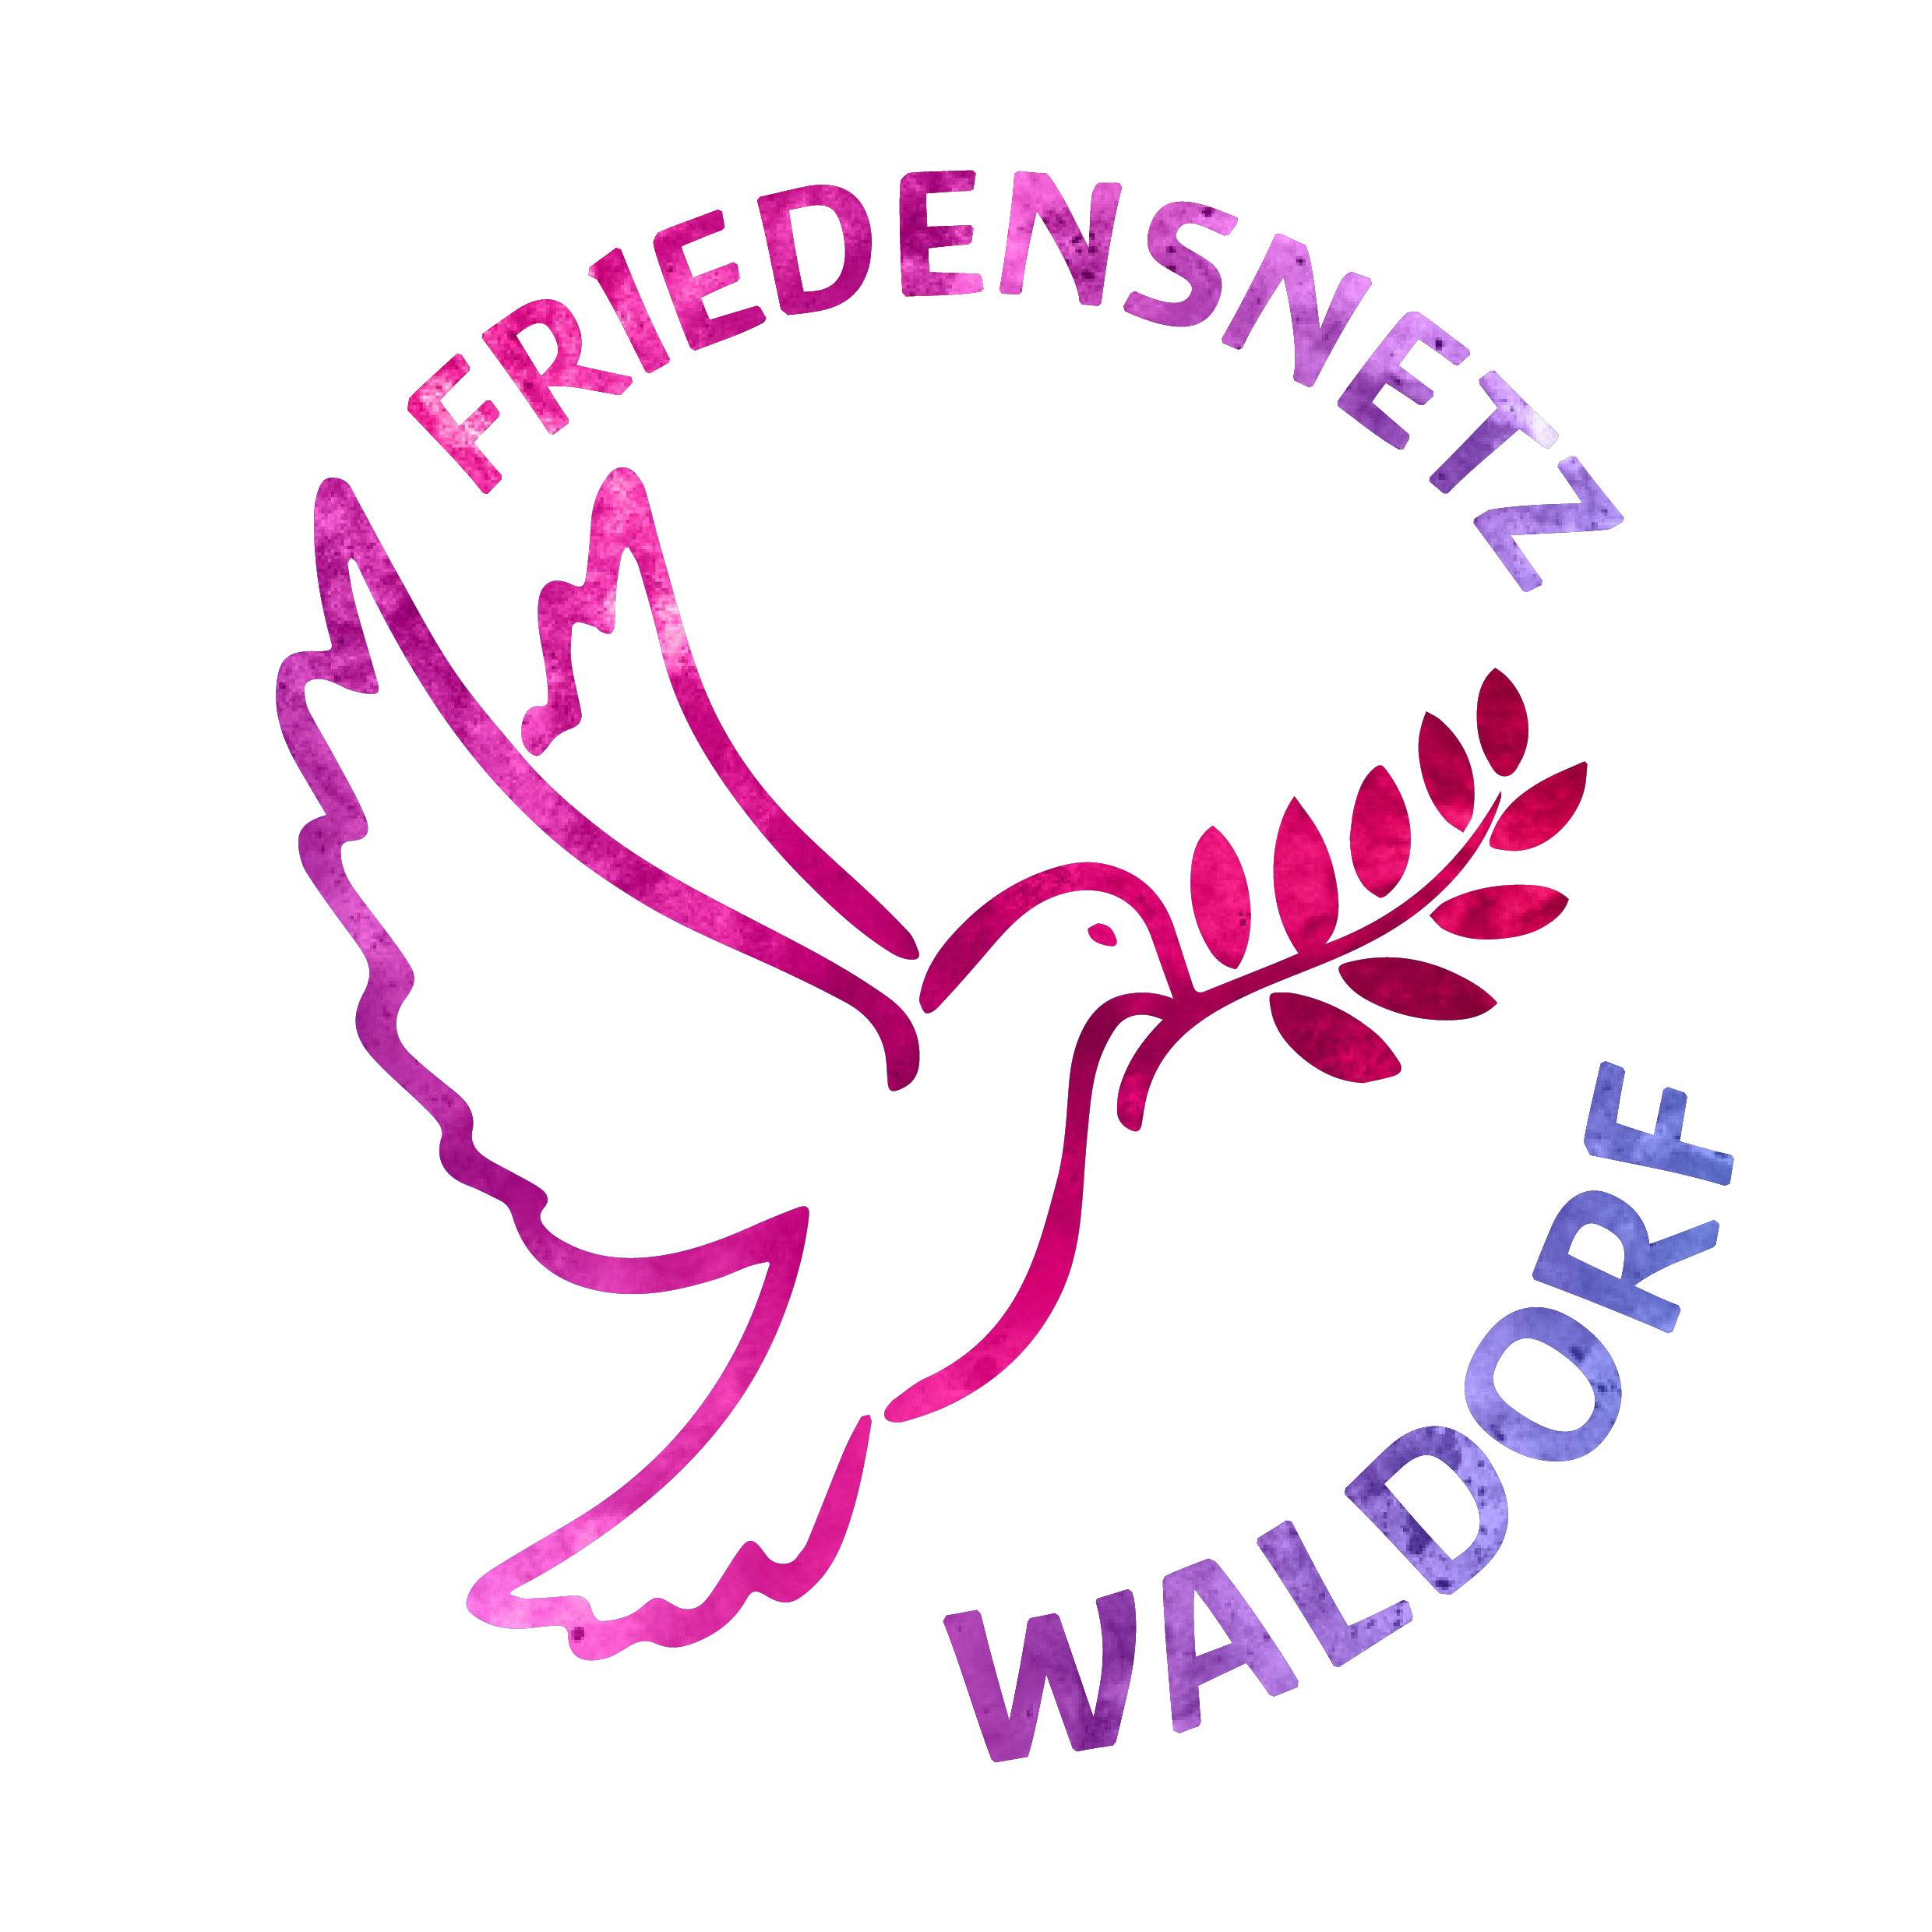 FRIEDENSNETZ WALDORF